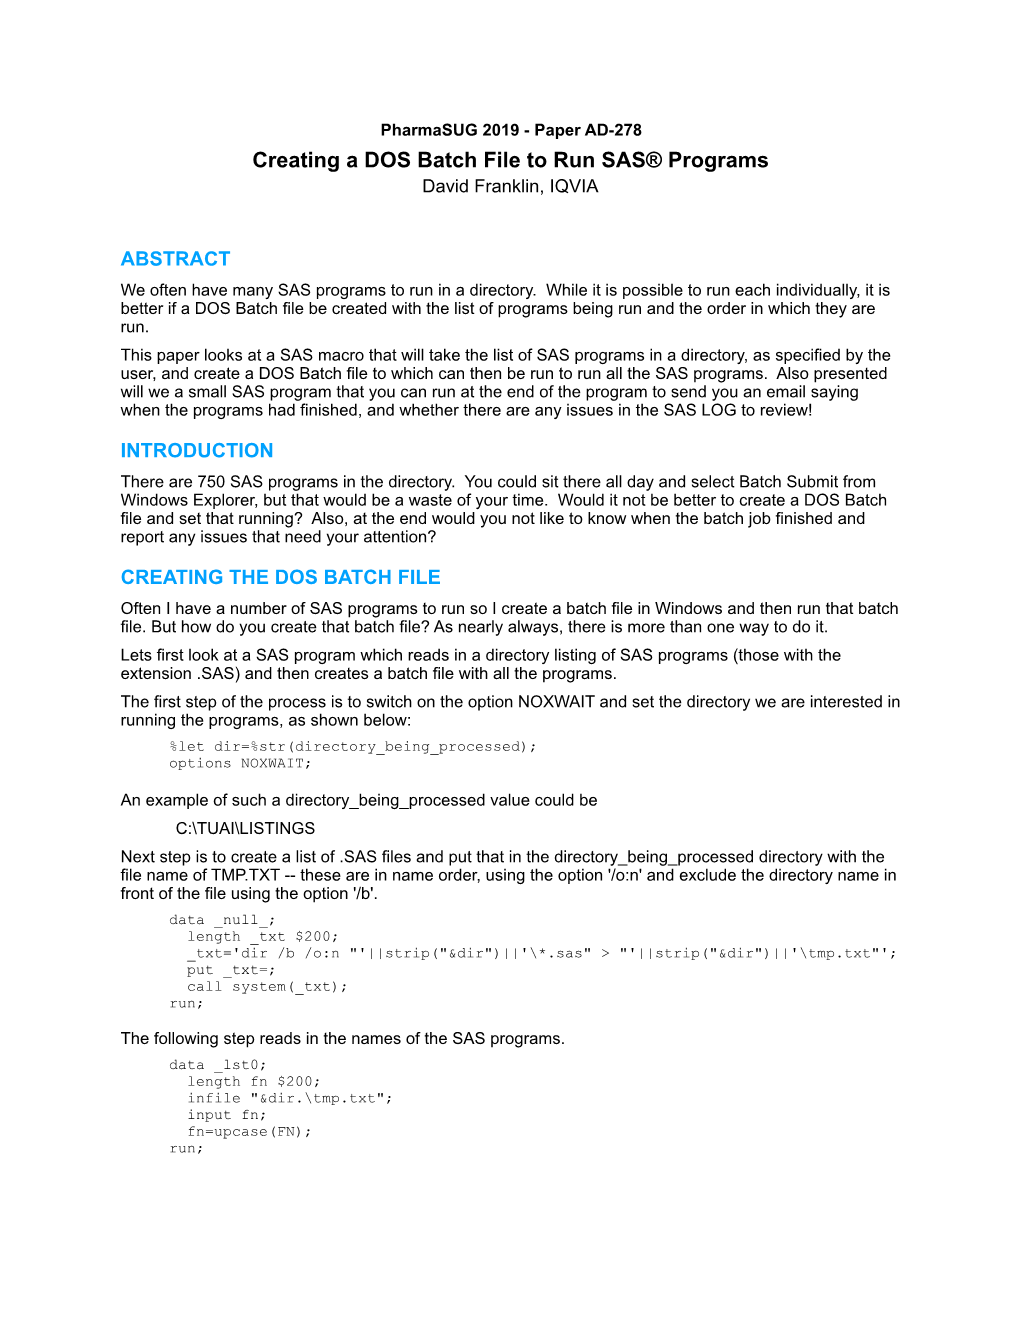 Creating a DOS Batch File to Run SAS® Programs David Franklin, IQVIA